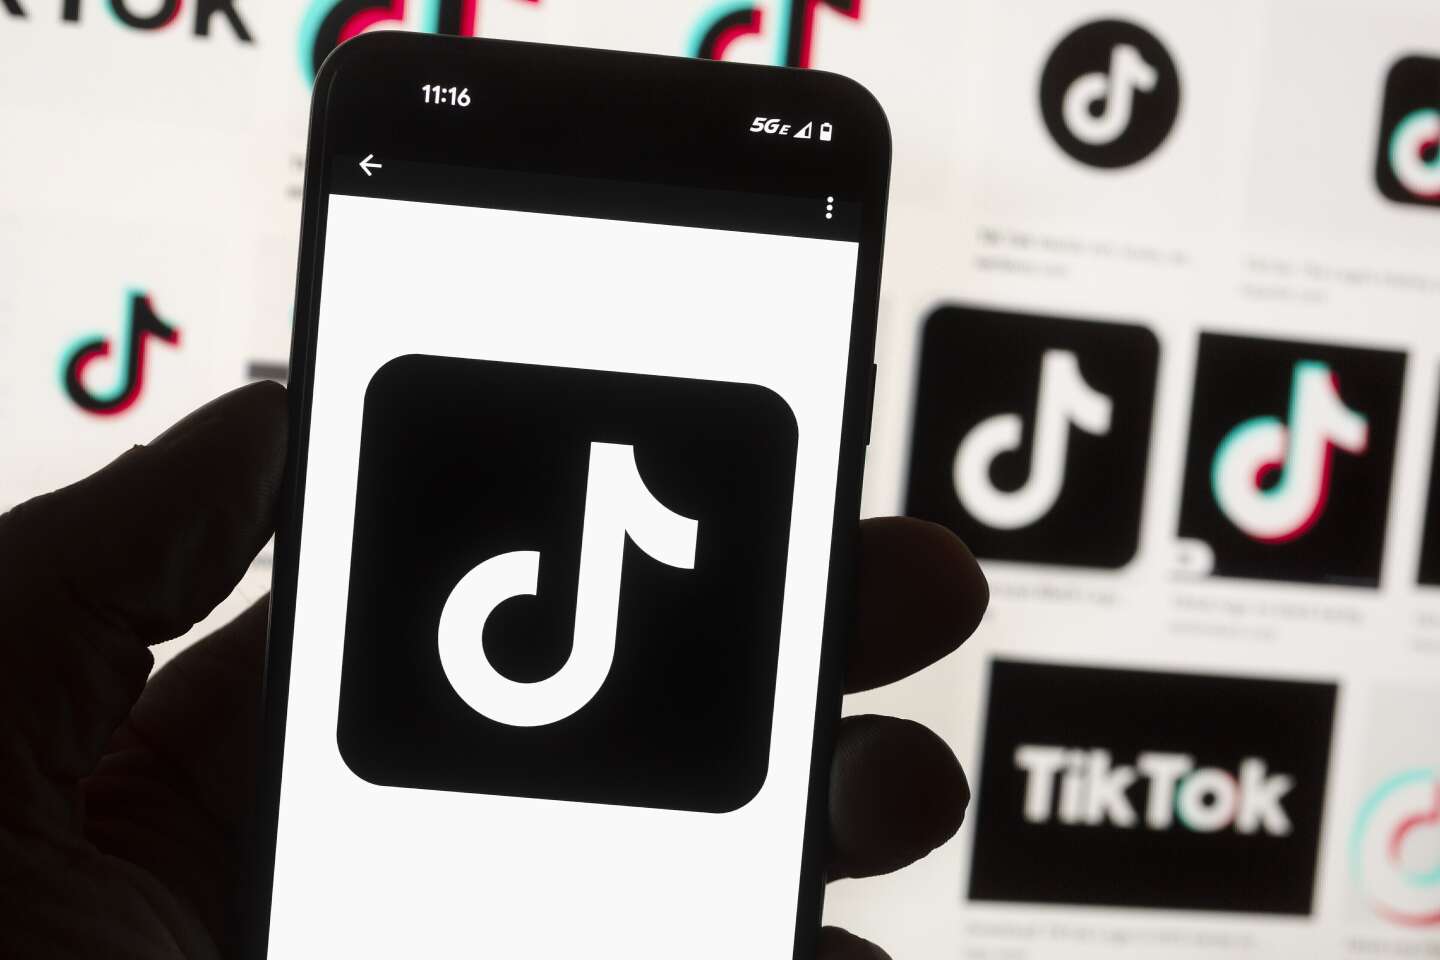 TikTok è stato bandito dai dispositivi mobili dalle agenzie federali statunitensi e dal governo canadese